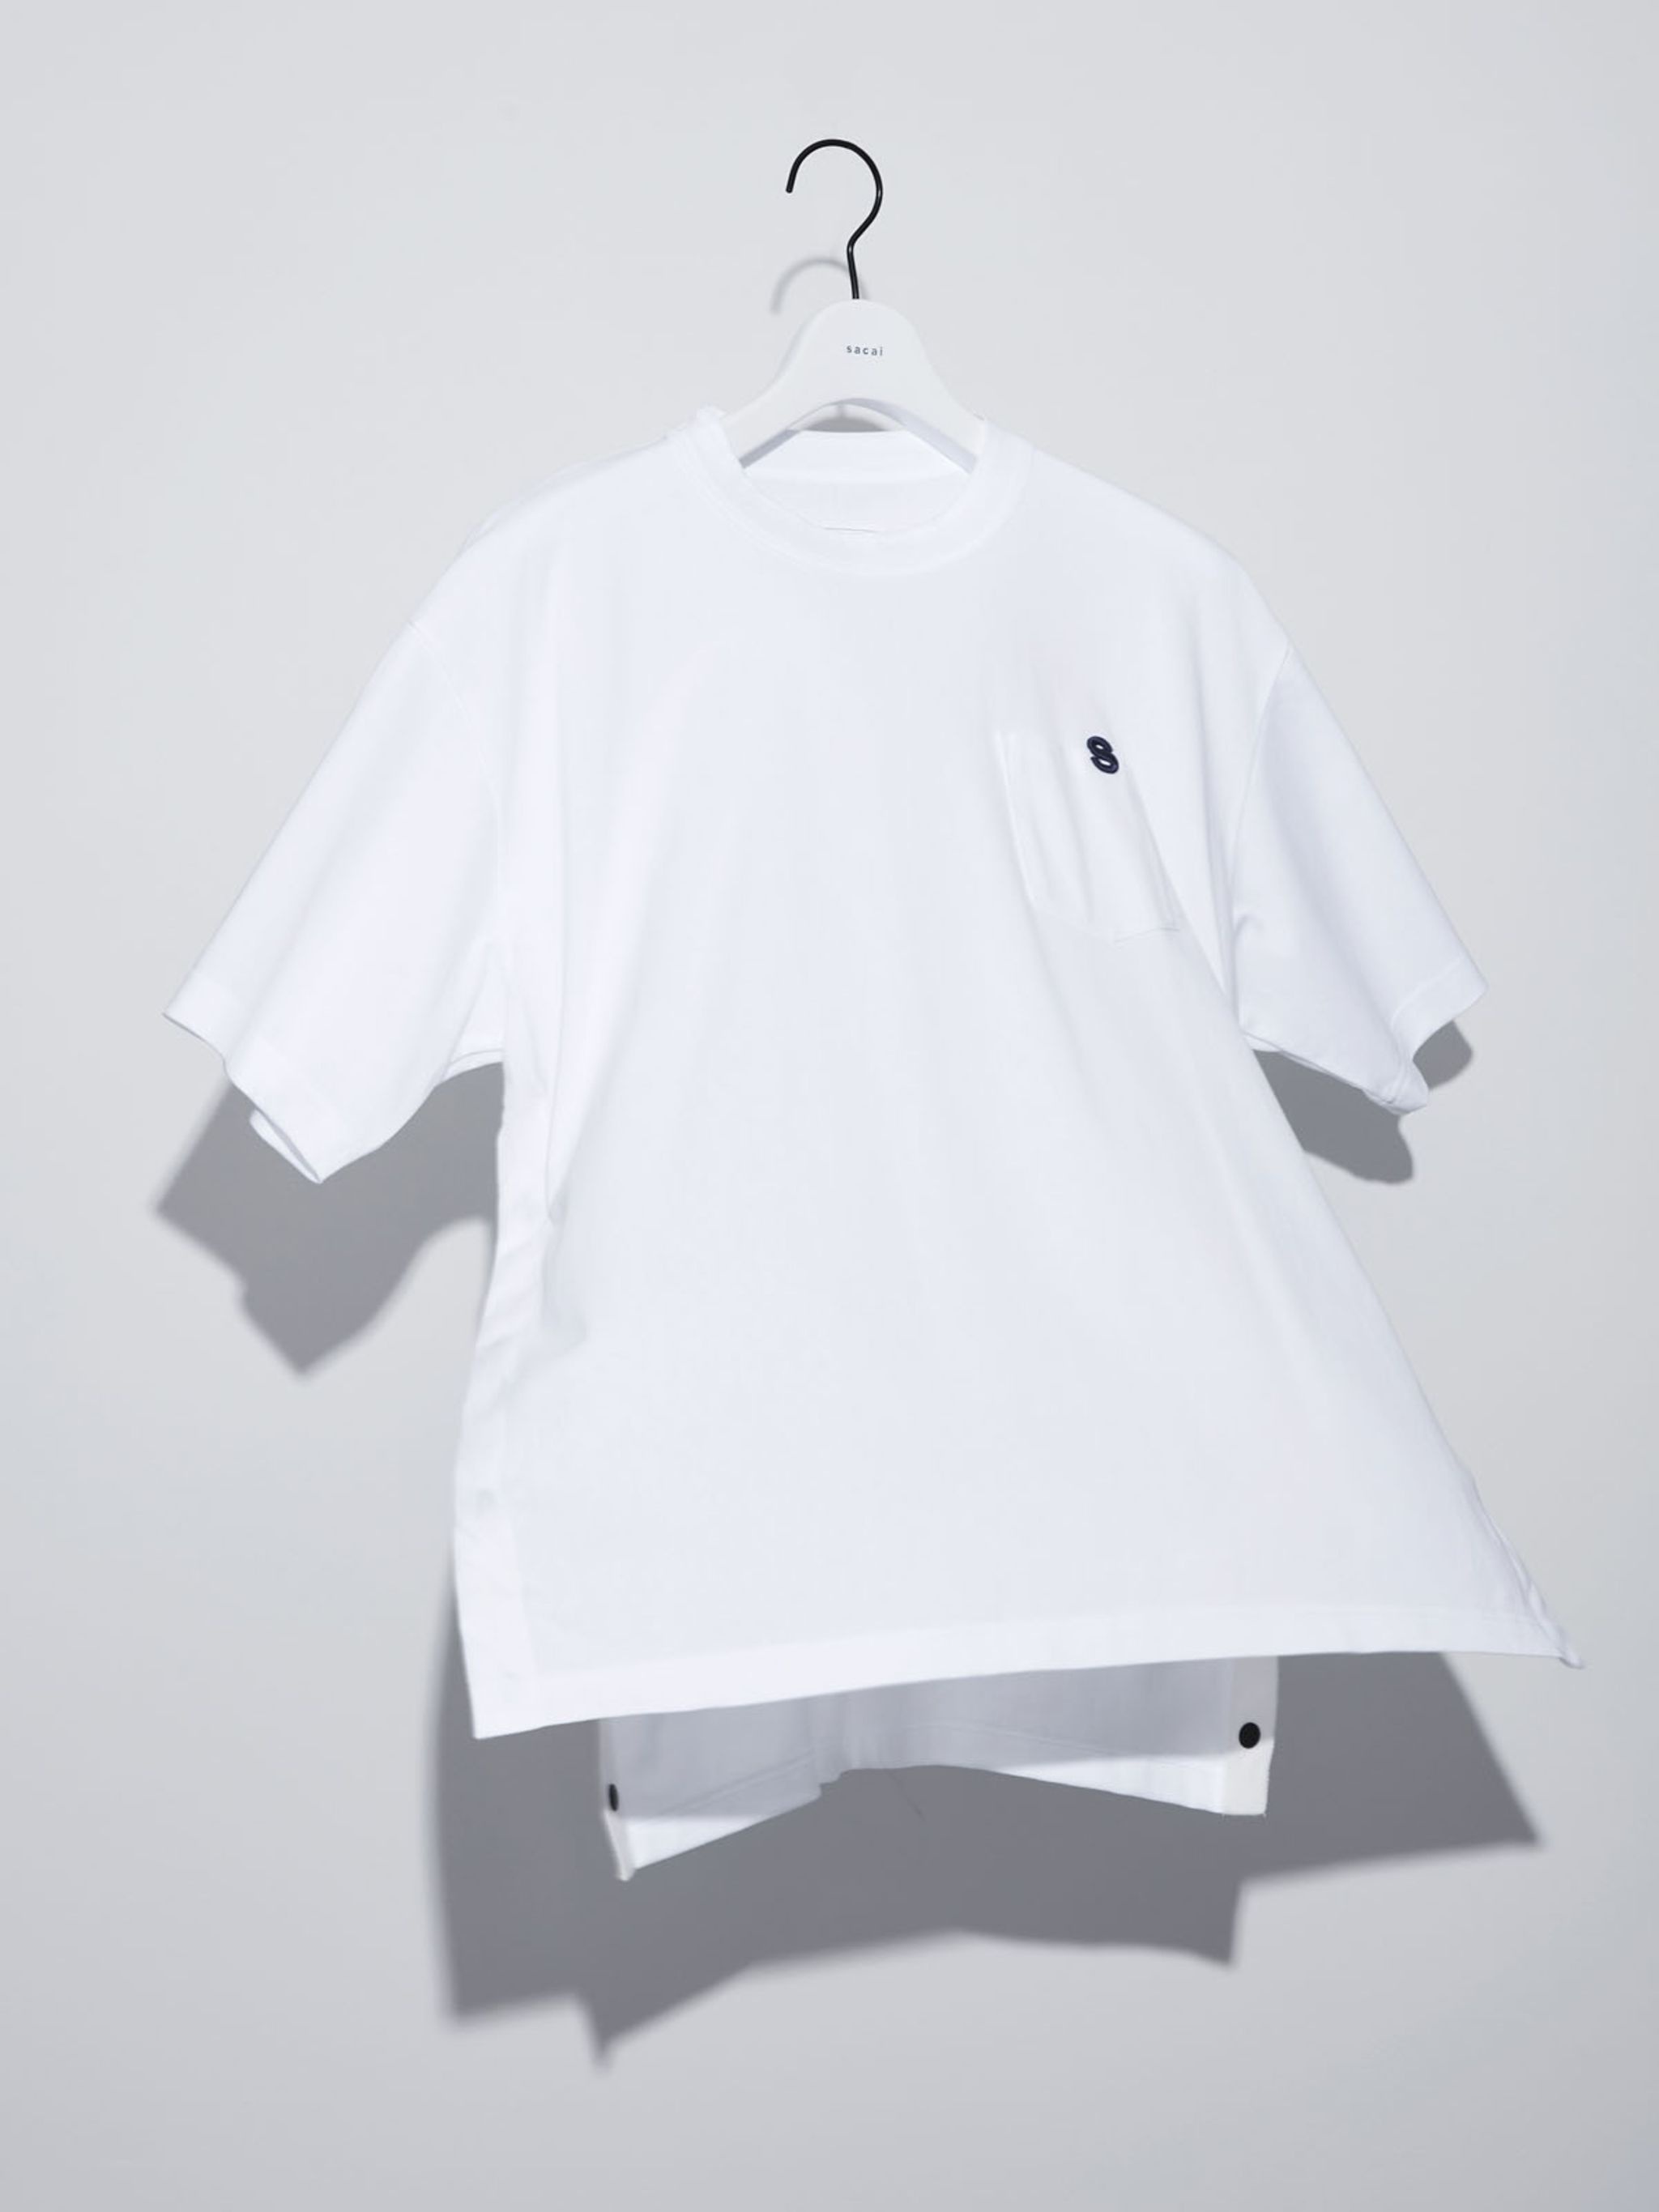 s Cotton Jersey T-Shirt - 2